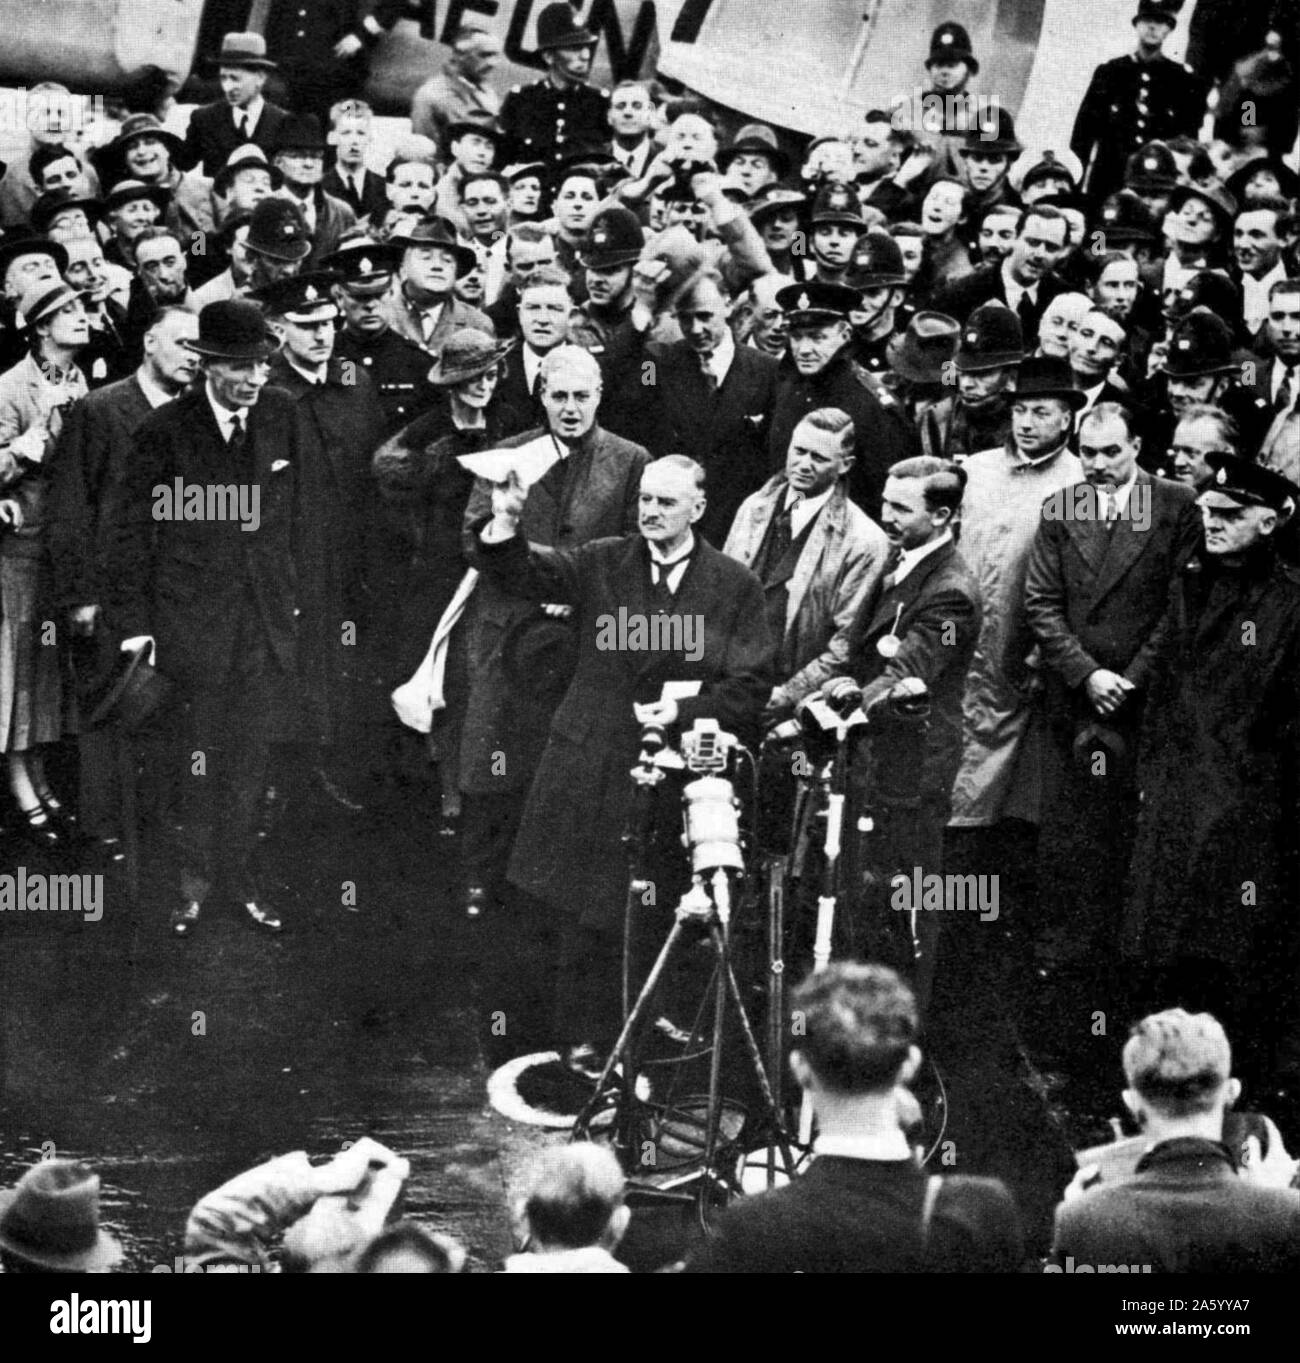 Arthur Neville Chamberlain (1869 – 9. November 1940) britischer konservativer Politiker, der als Premierminister 1937 bis Mai 1940 diente. Chamberlain kommt zurück in Großbritannien nach der Unterzeichnung des Münchner Abkommens 1938 Gegentor der Region deutschsprachige Sudetenland der Tschechoslowakei nach Deutschland Stockfoto